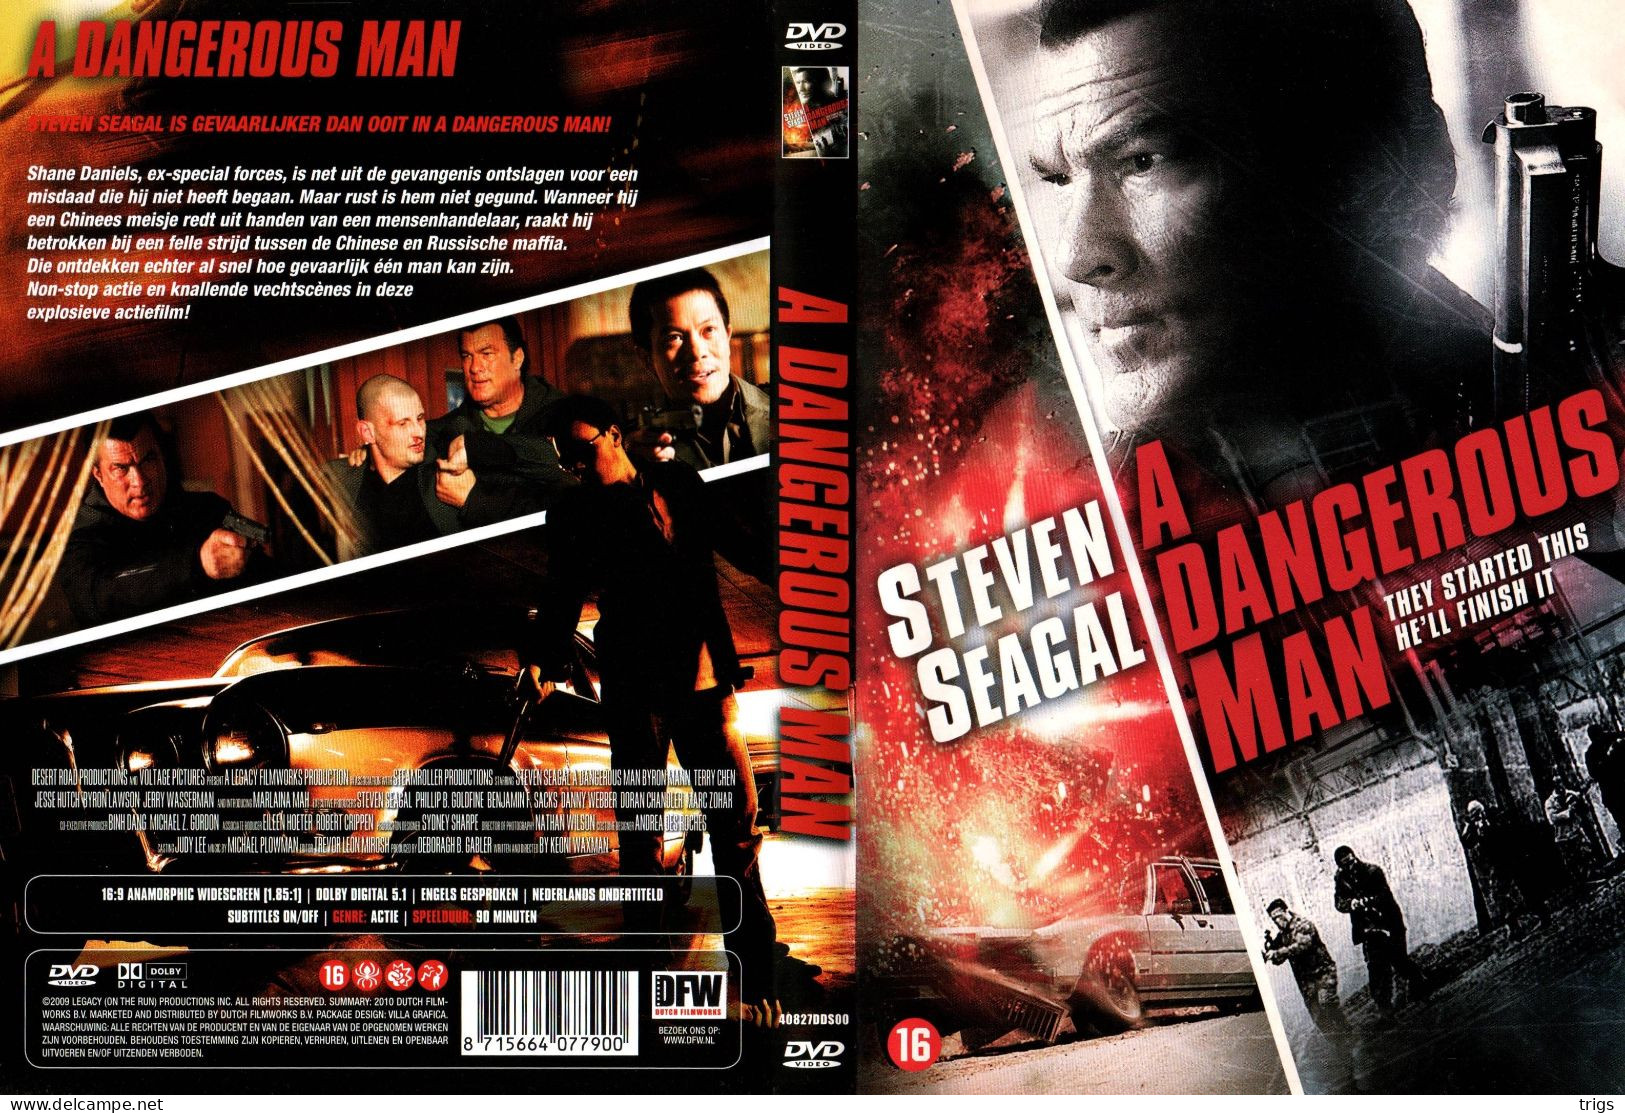 DVD - A Dangerous Man - Action, Adventure